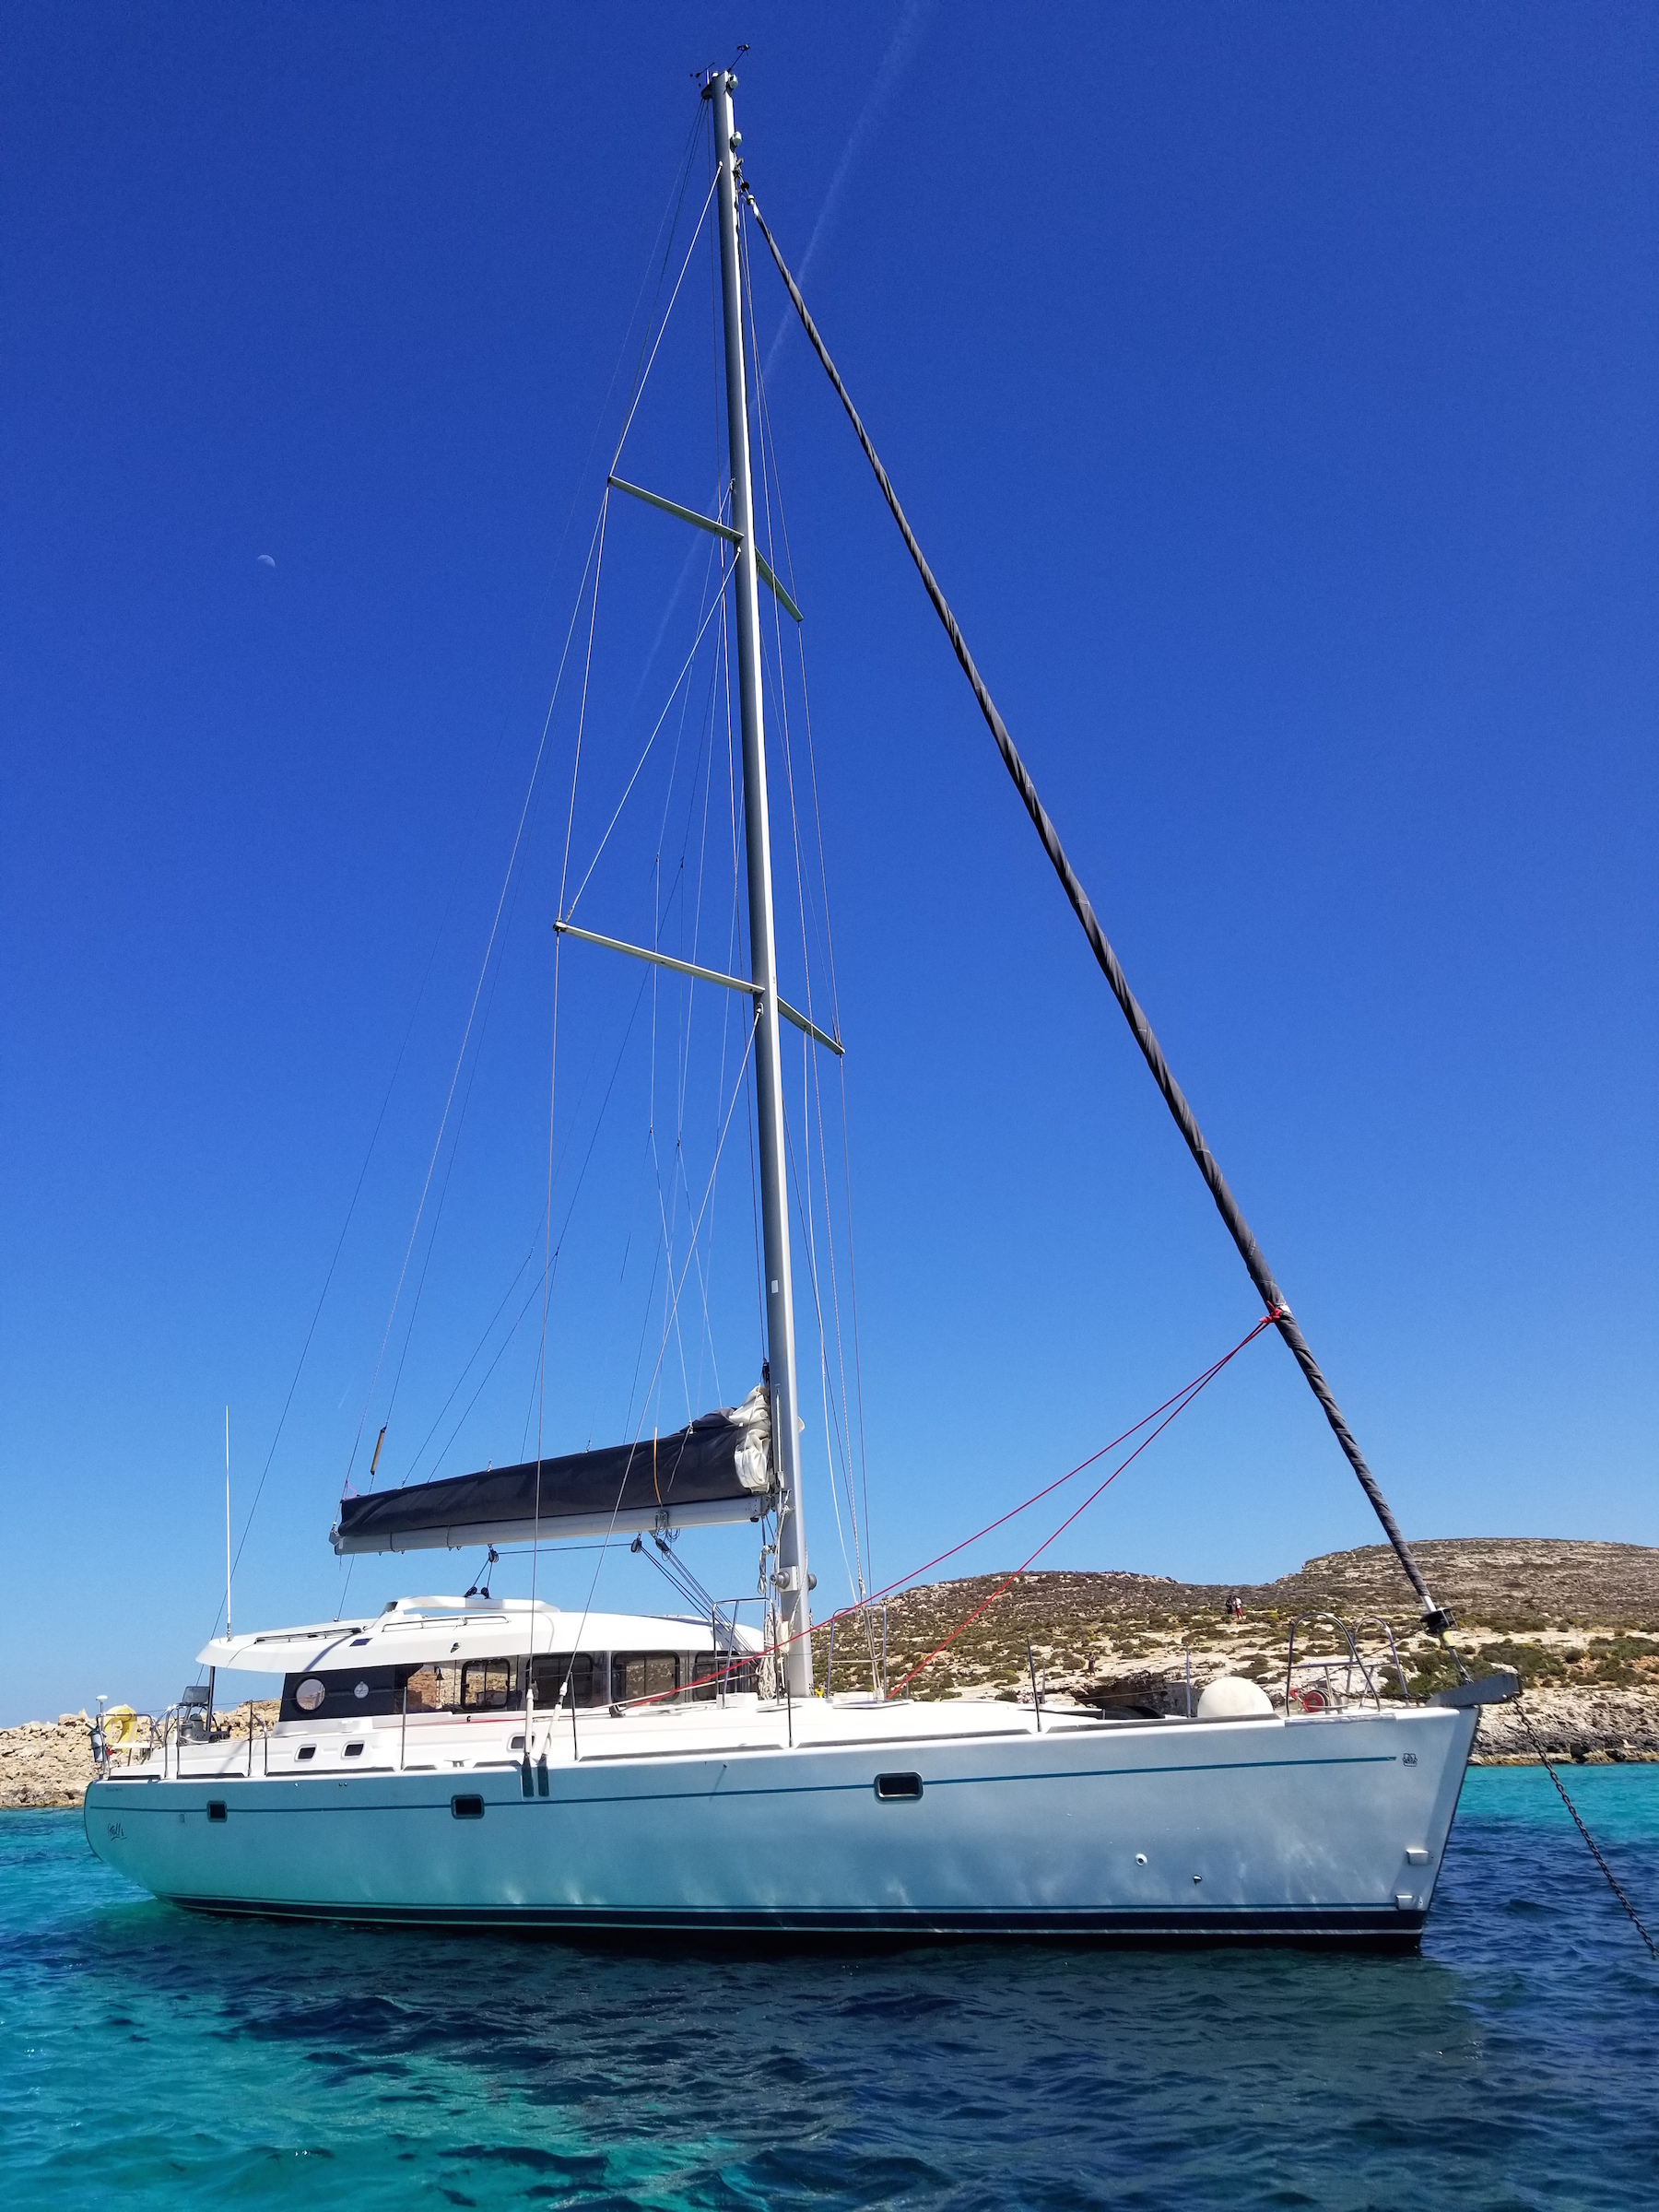 dufour yacht malta